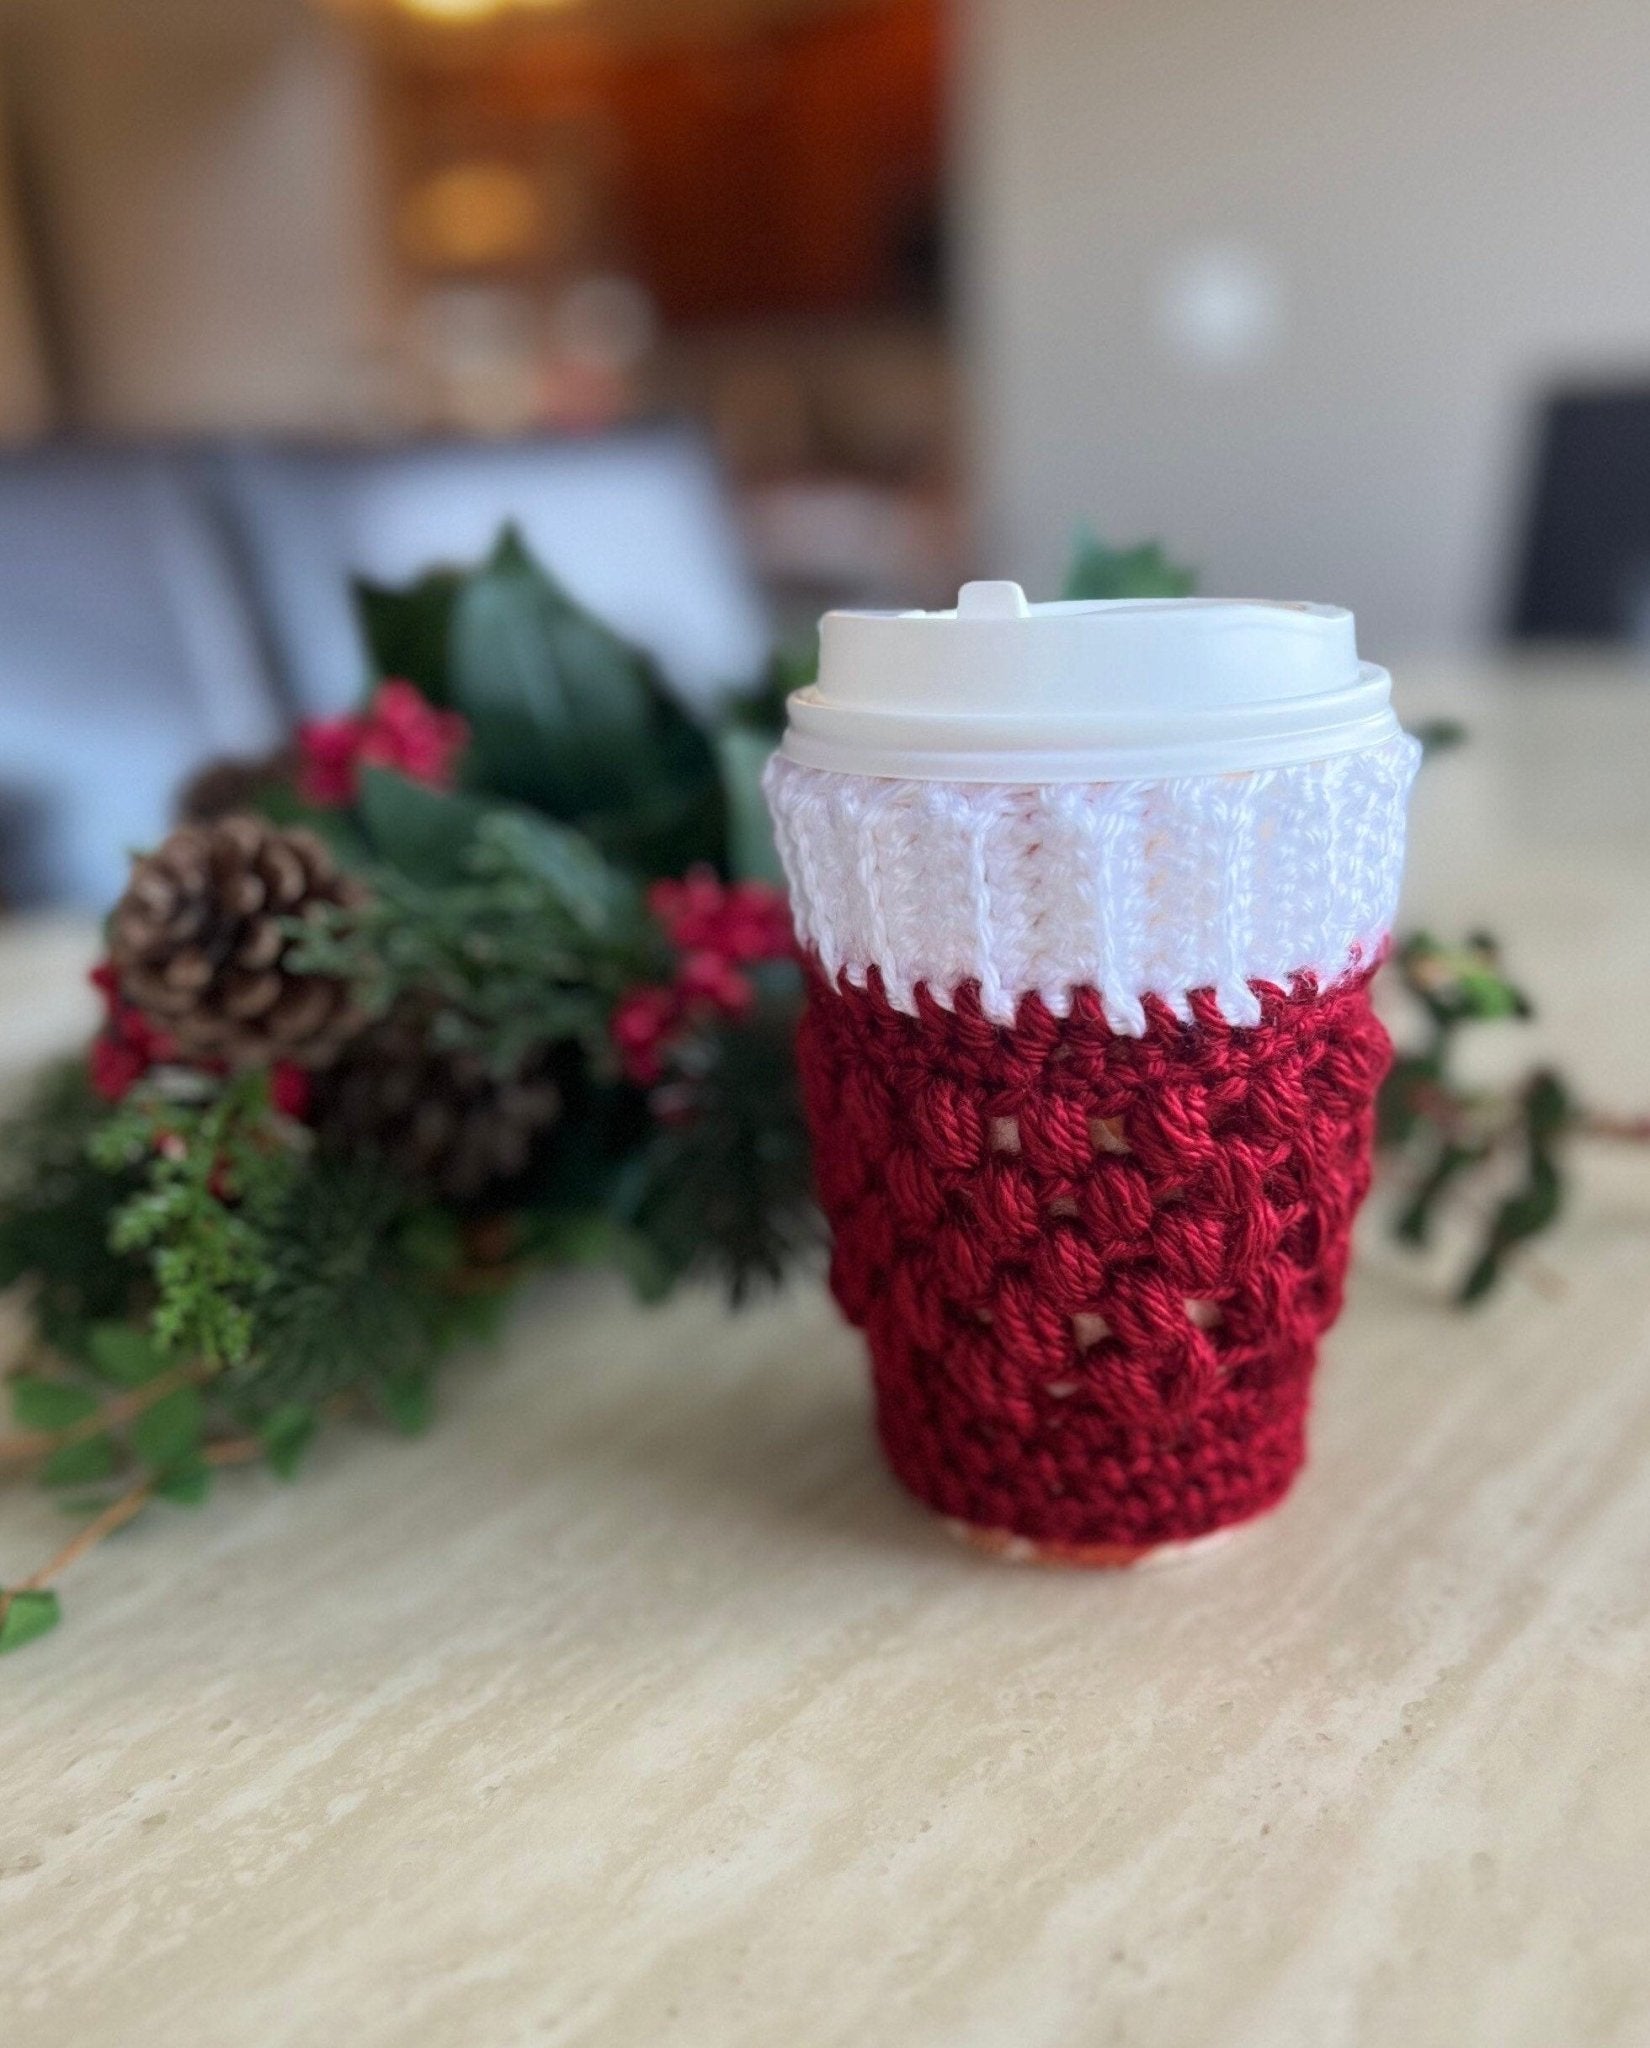 Coffee cozy- Dusty rose reusable crochet coffee cozy- drink cozy